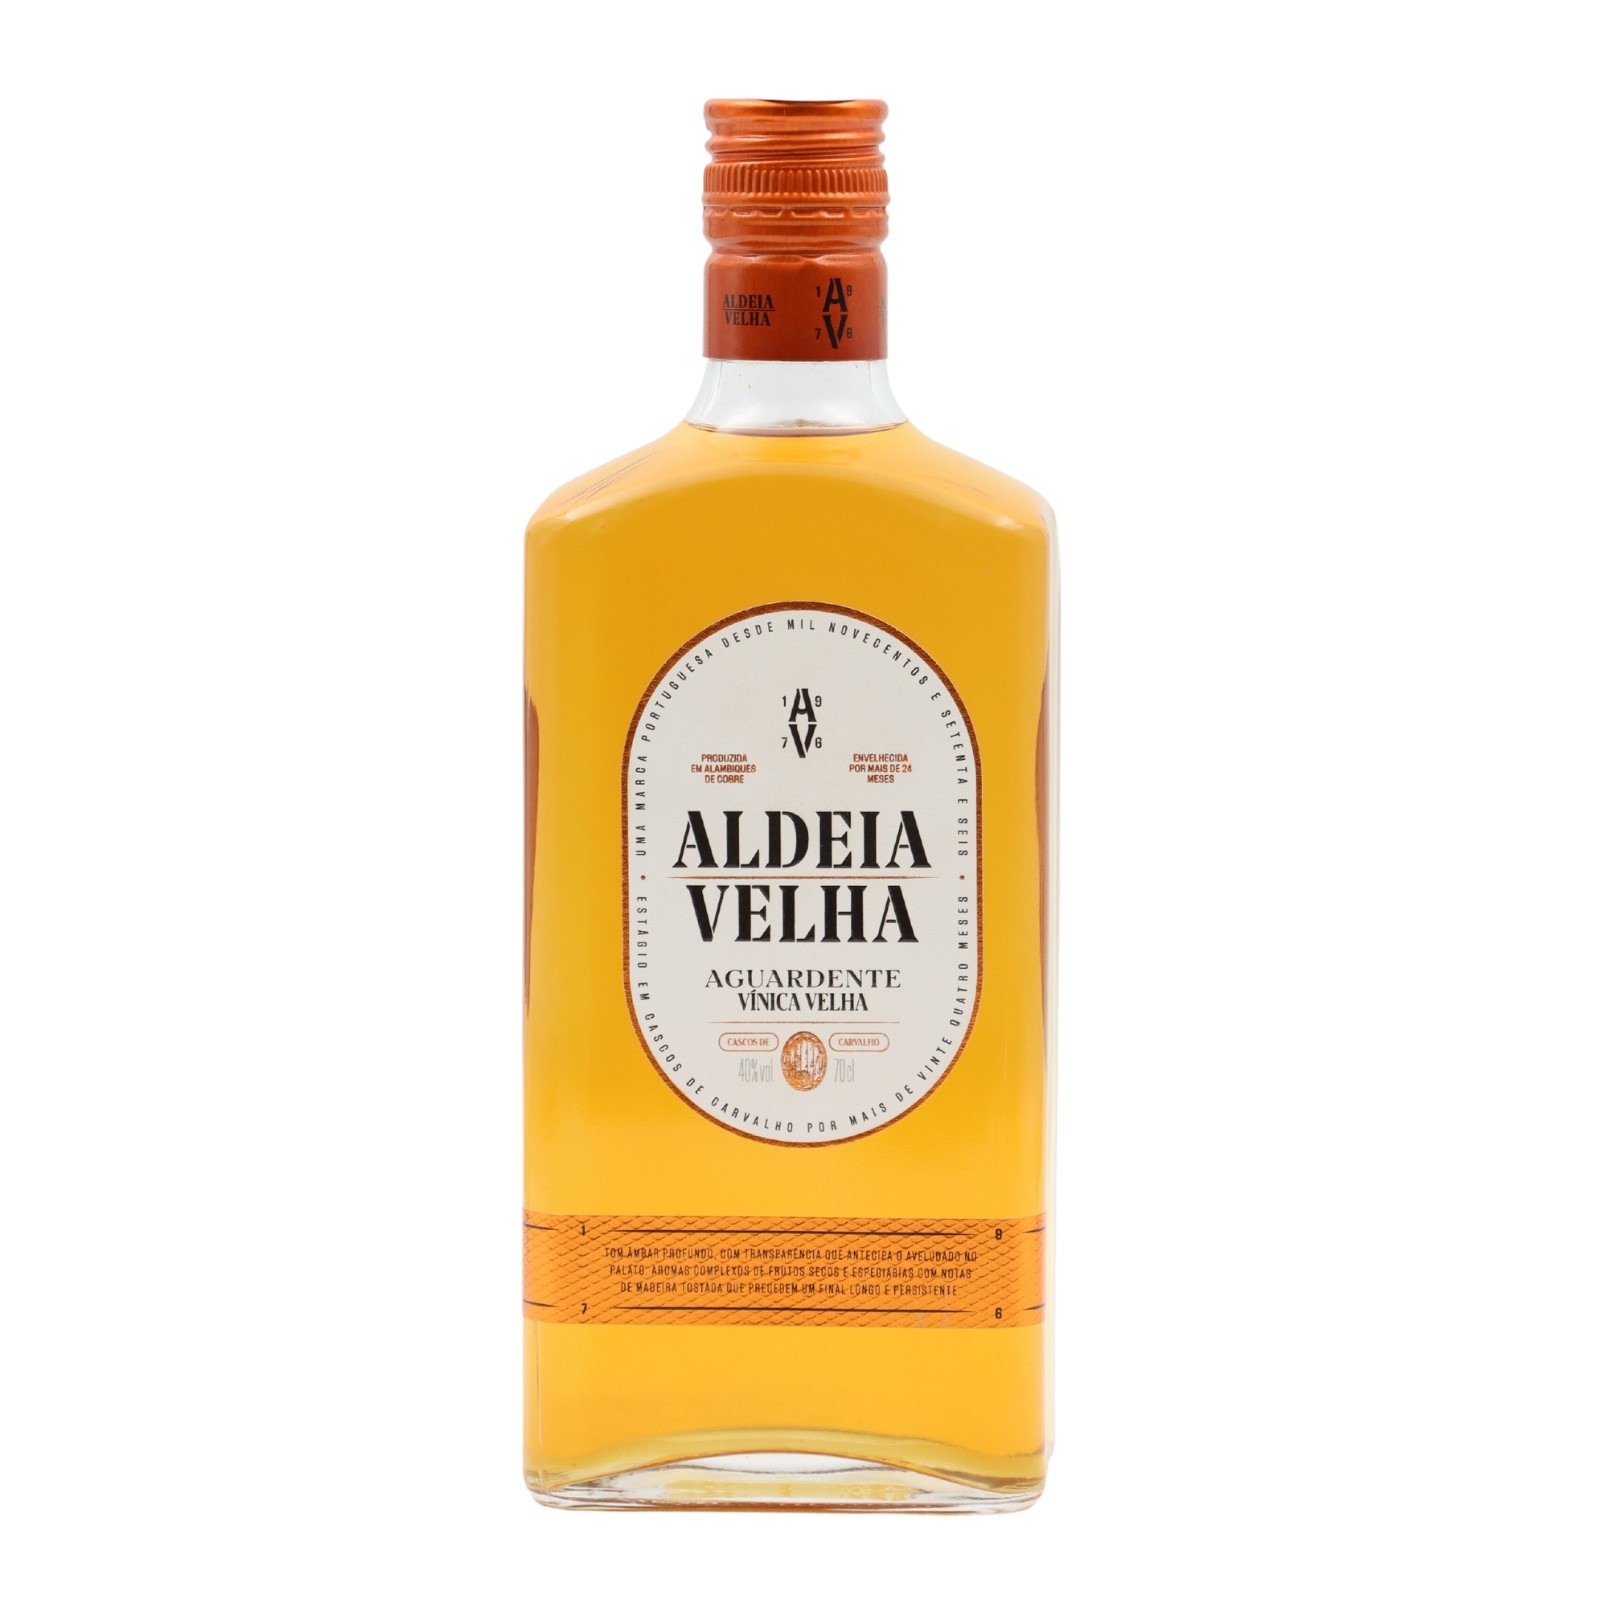 Aldeia Velha Old Brandy